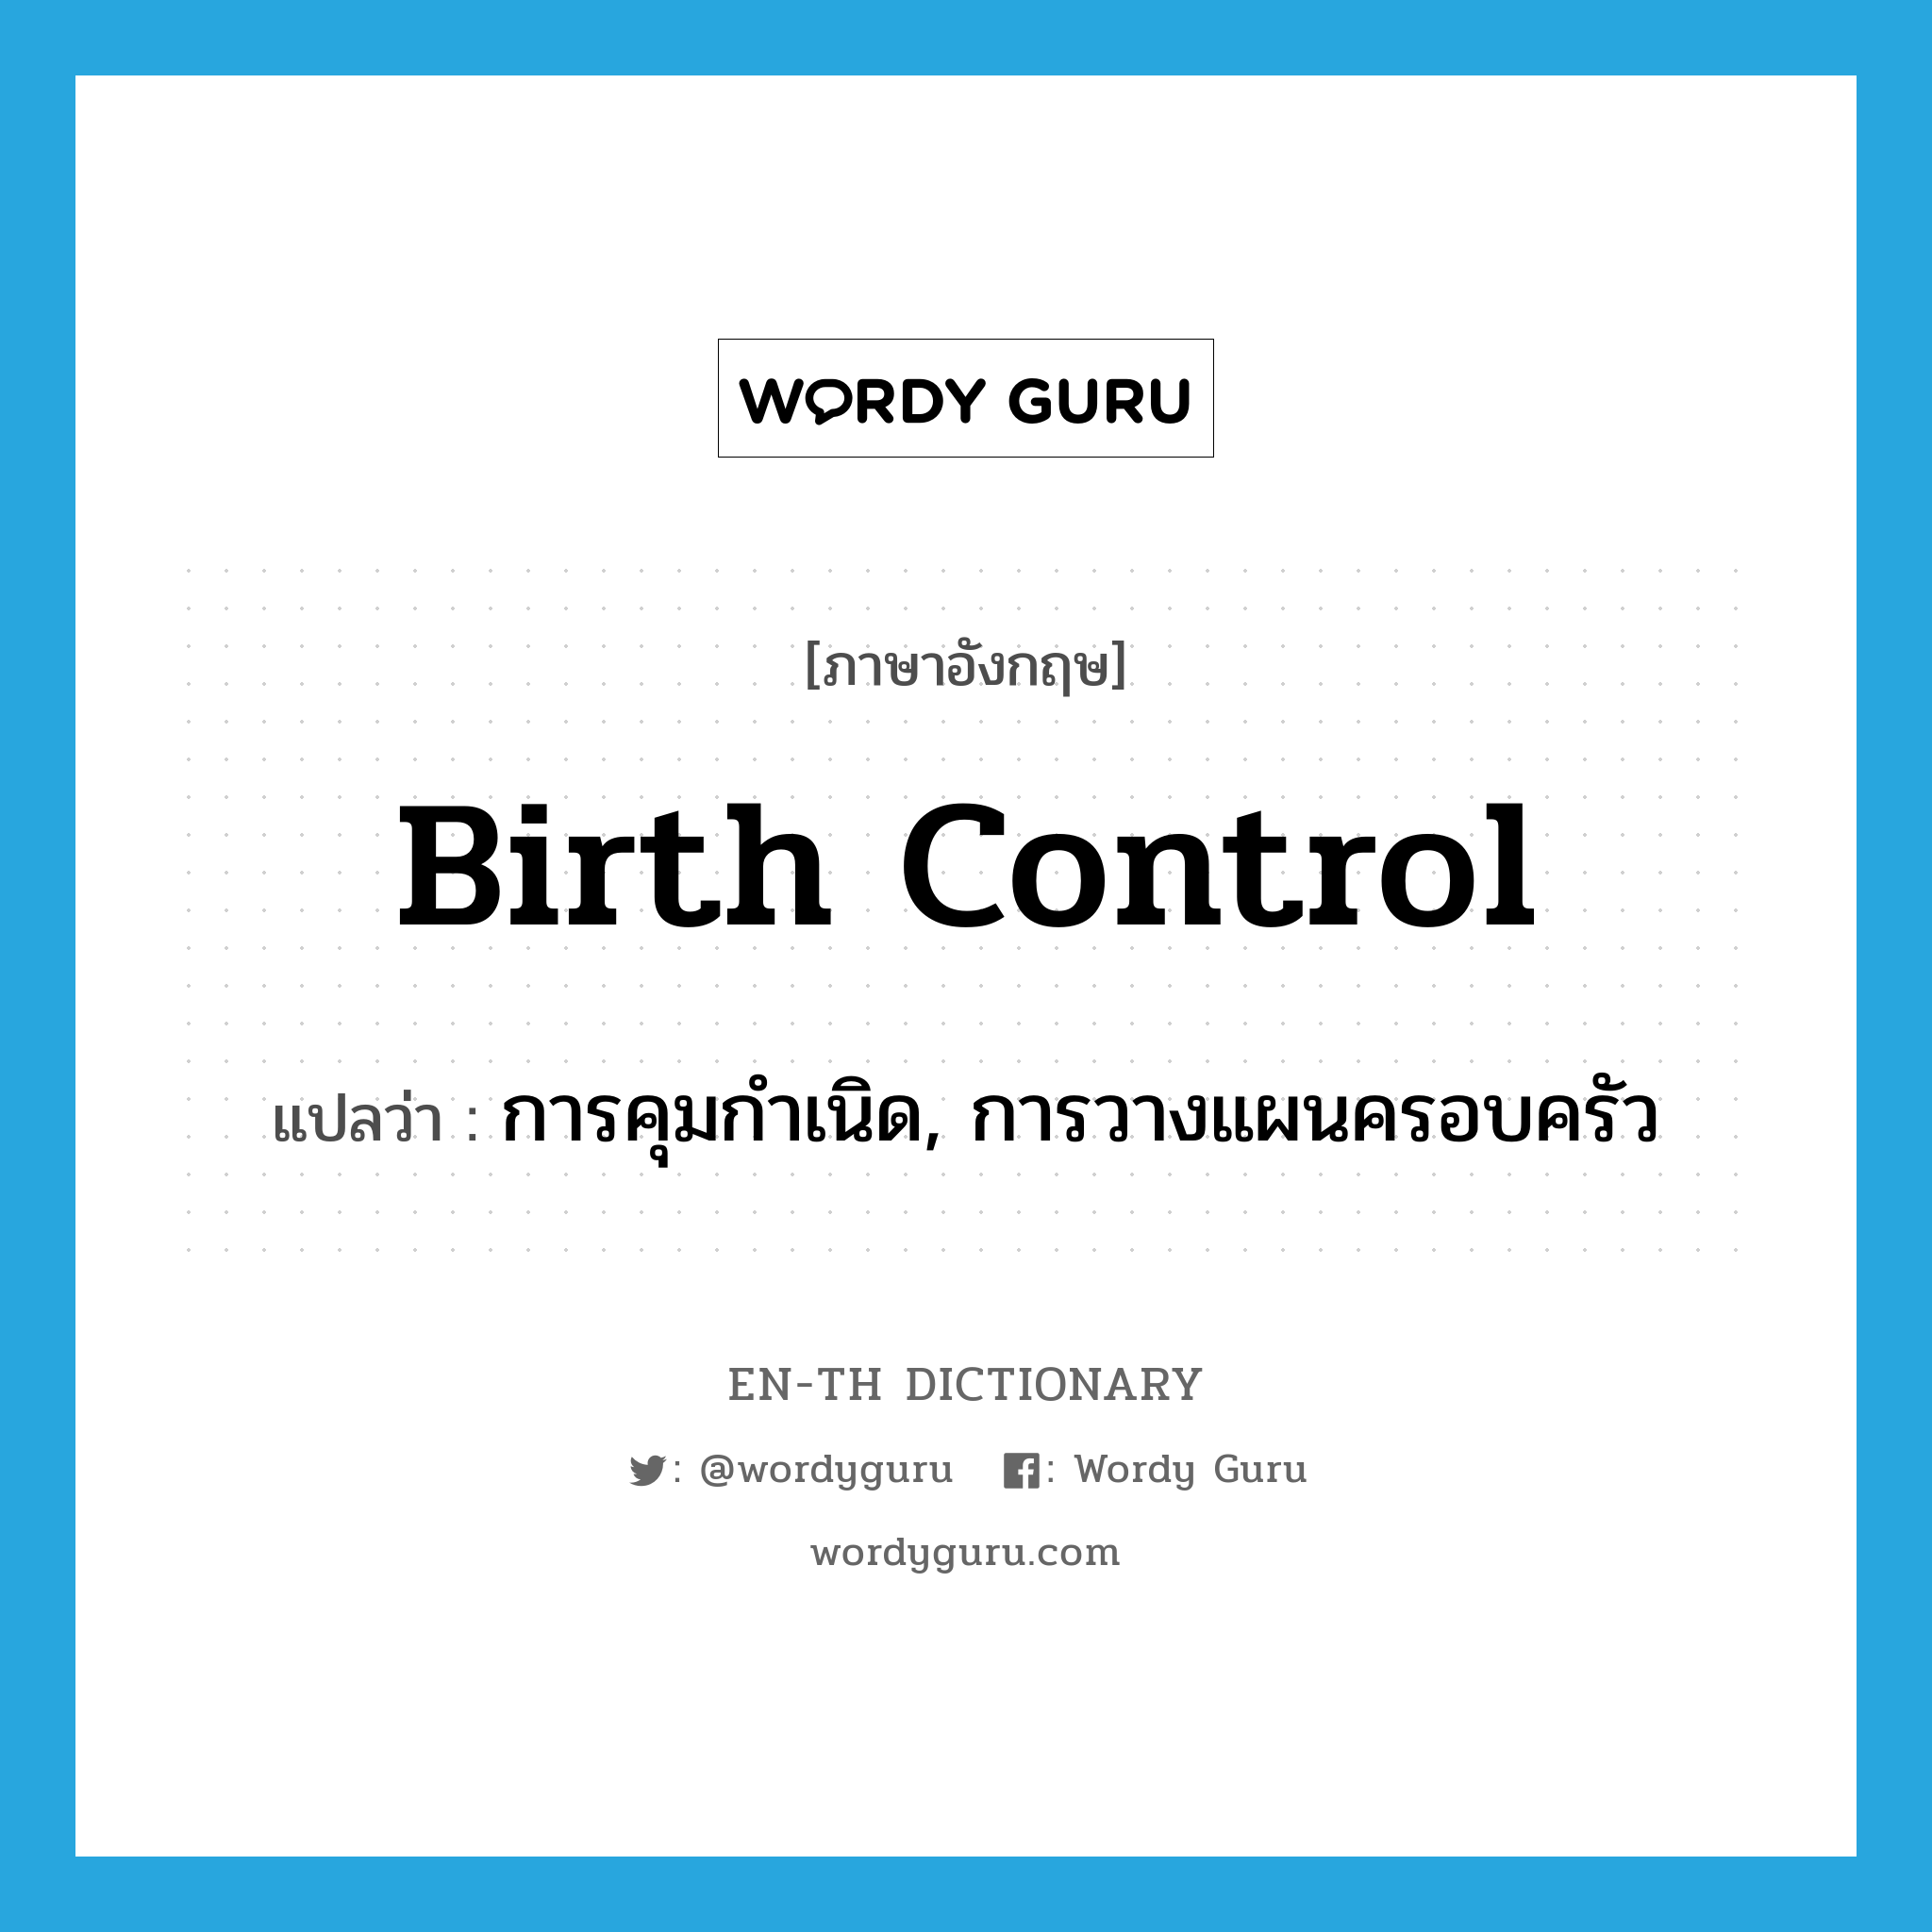 การคุมกำเนิด, การวางแผนครอบครัว ภาษาอังกฤษ?, คำศัพท์ภาษาอังกฤษ การคุมกำเนิด, การวางแผนครอบครัว แปลว่า birth control ประเภท N หมวด N